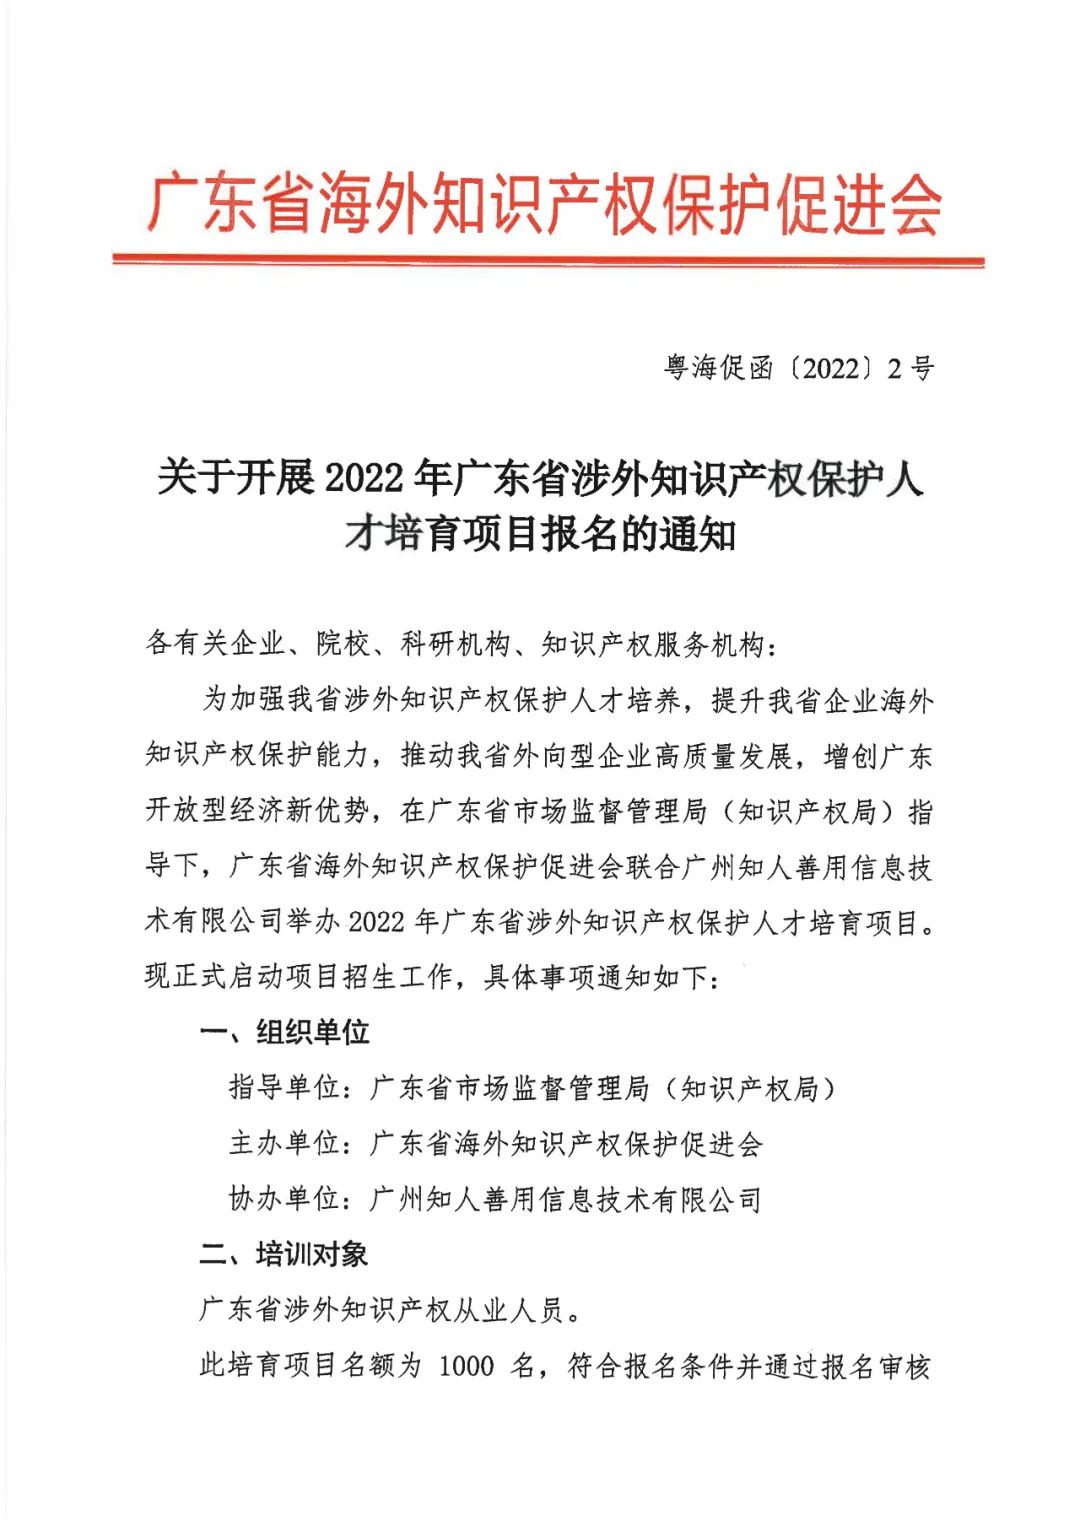 来了！「2022年广东省涉外知识产权保护人才培育项目」火热报名中！